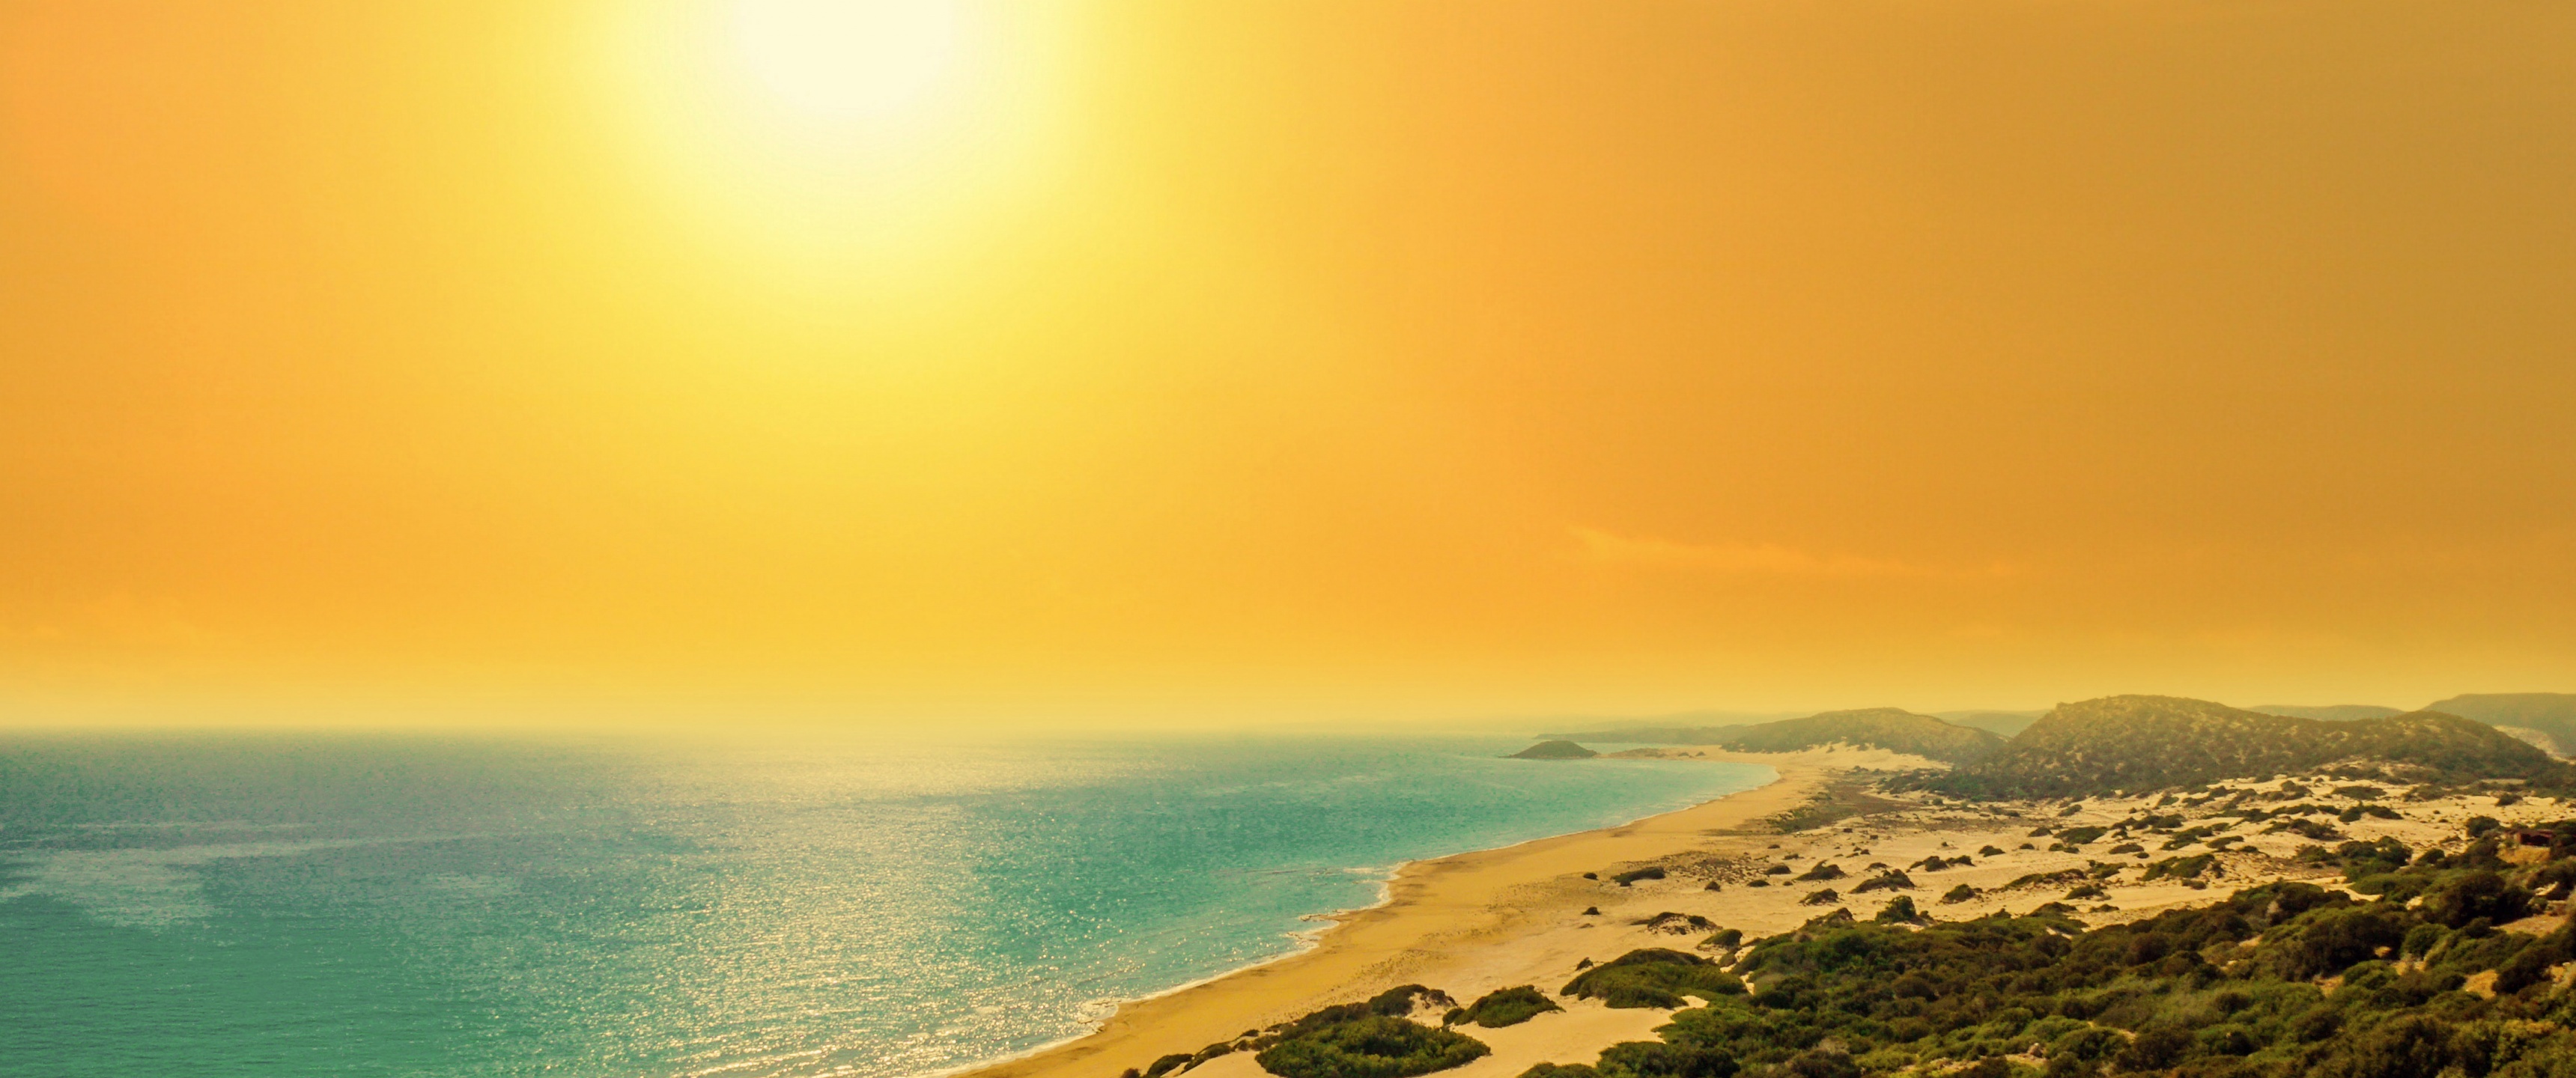 Golden sand beach wallpaper, Coastal sunset, North Cyprus, Nature's beauty, 3440x1440 Dual Screen Desktop